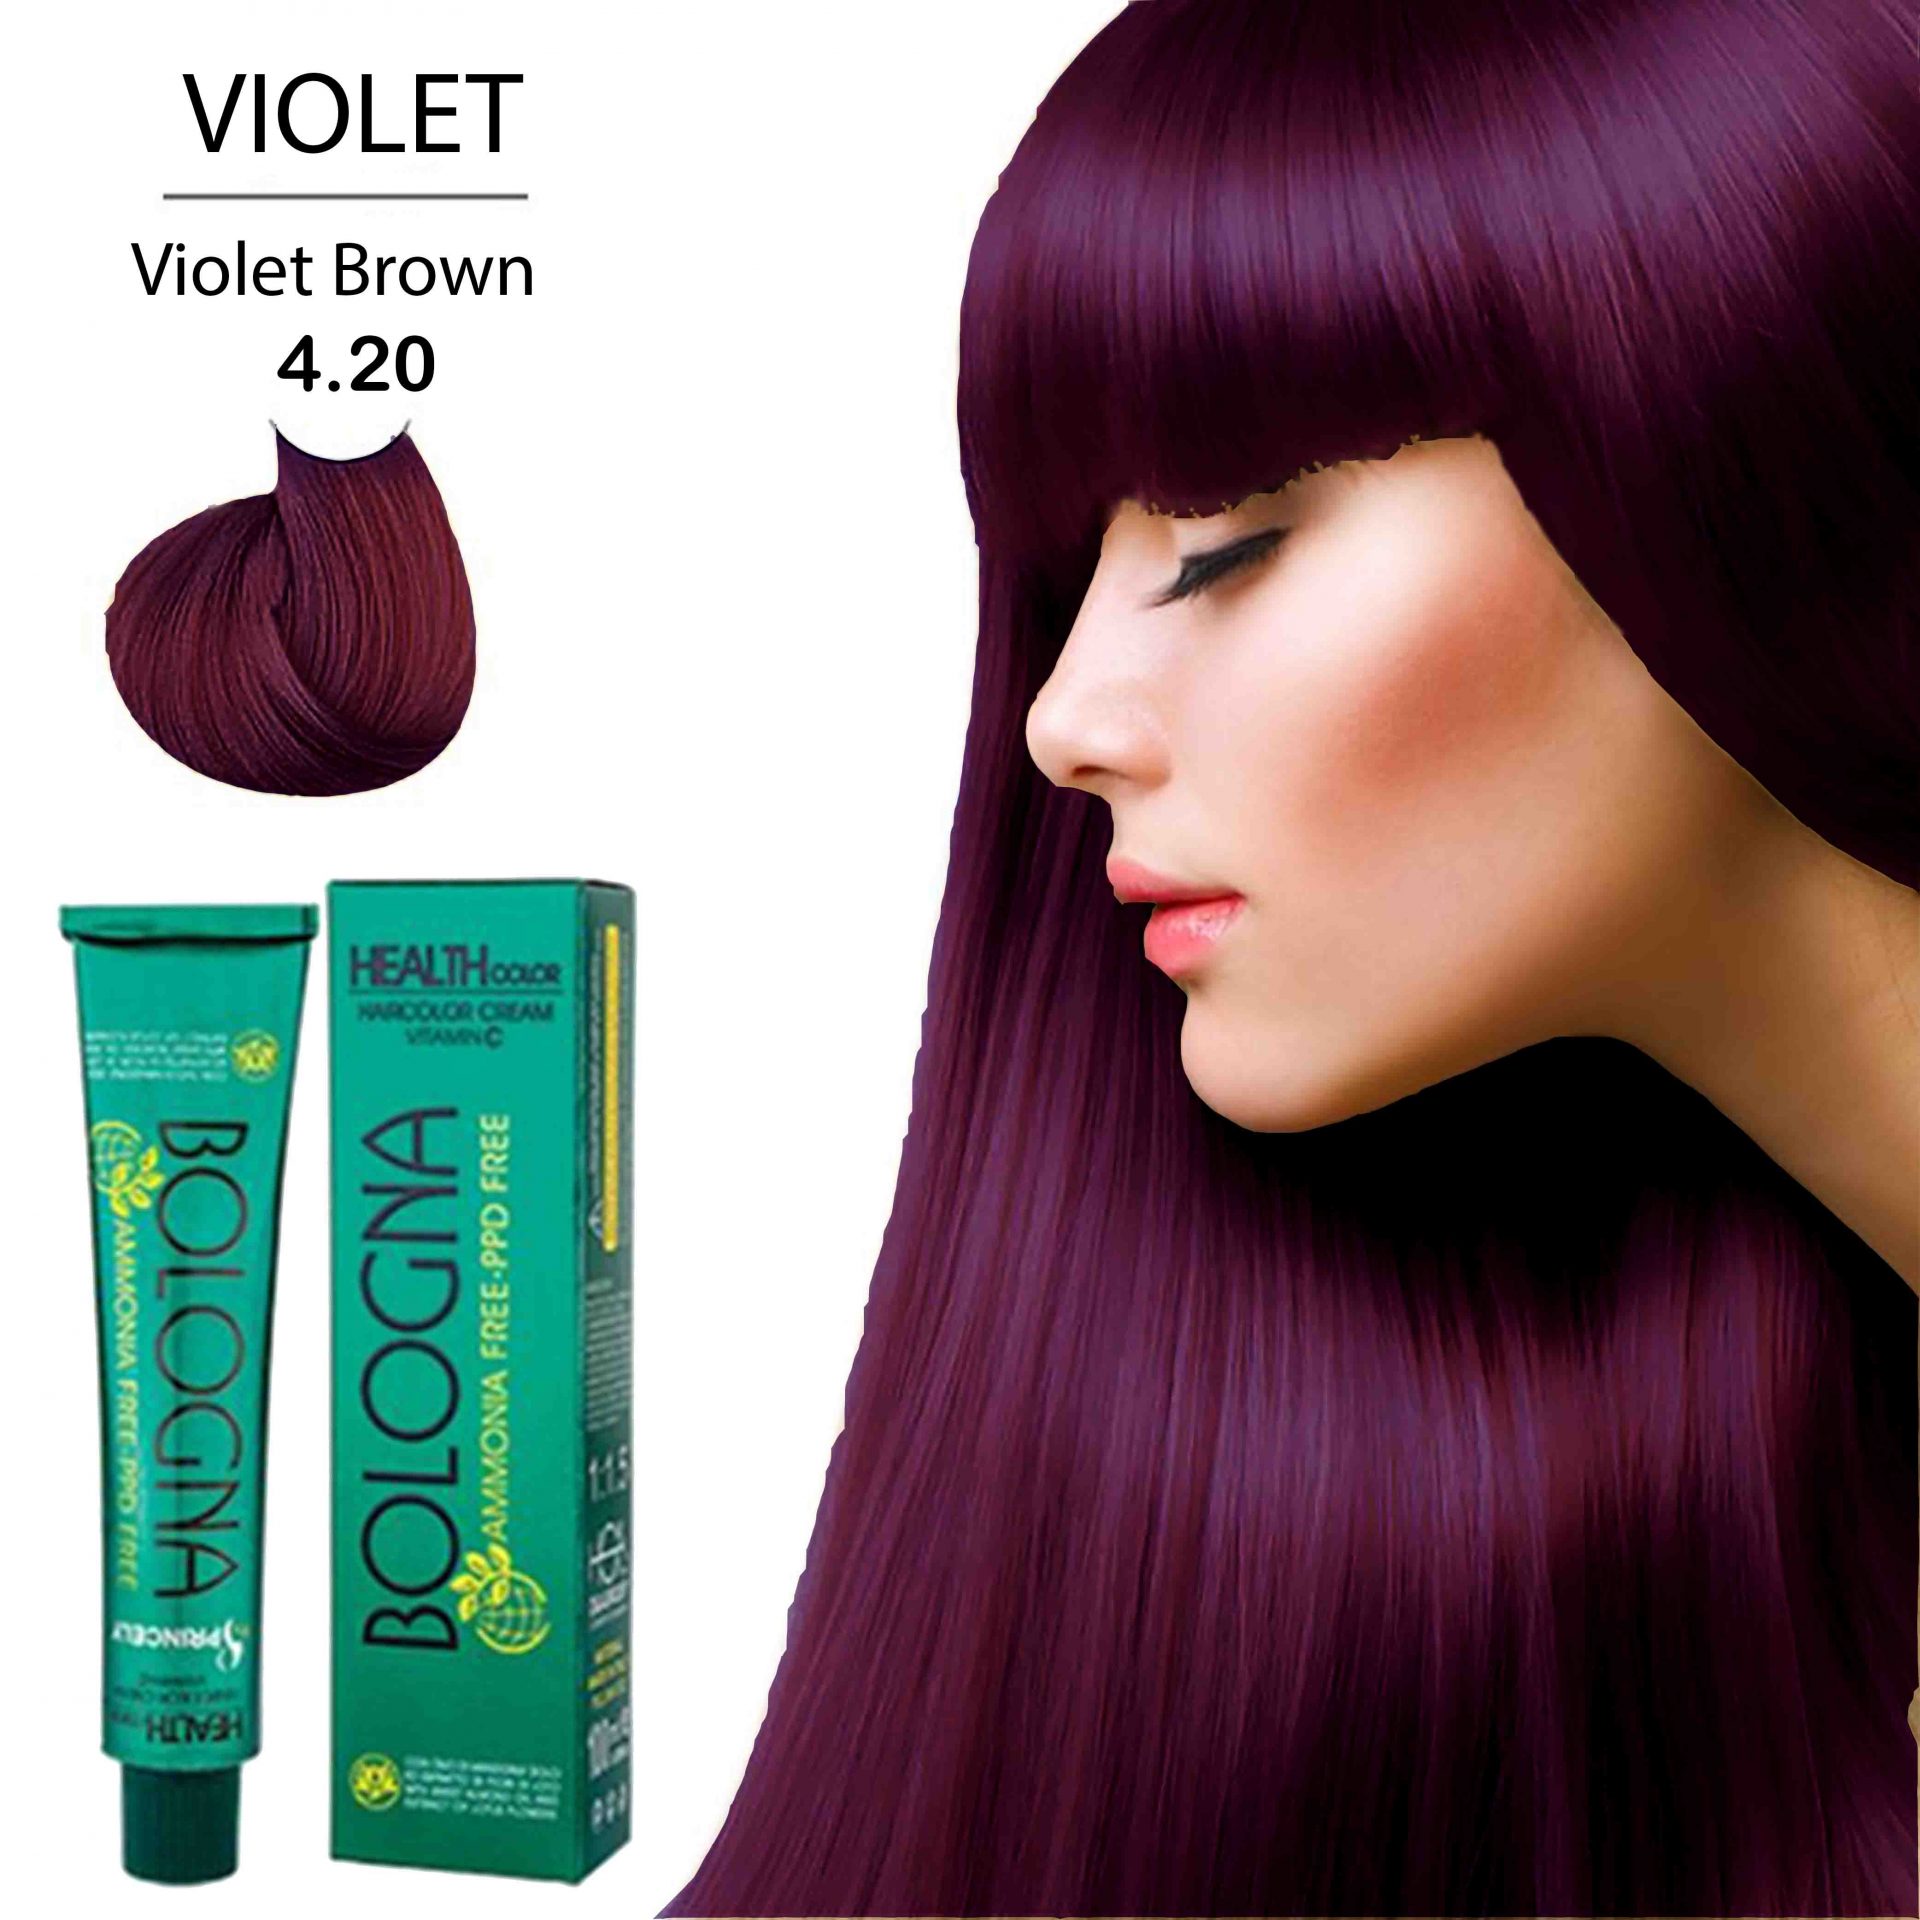 رنگ مو بدون آمونیاک بلونیا 100میل Violet Brown 4.20_فروشگاه اینترنتی آرایشی بهداشتی آزارو در شیراز